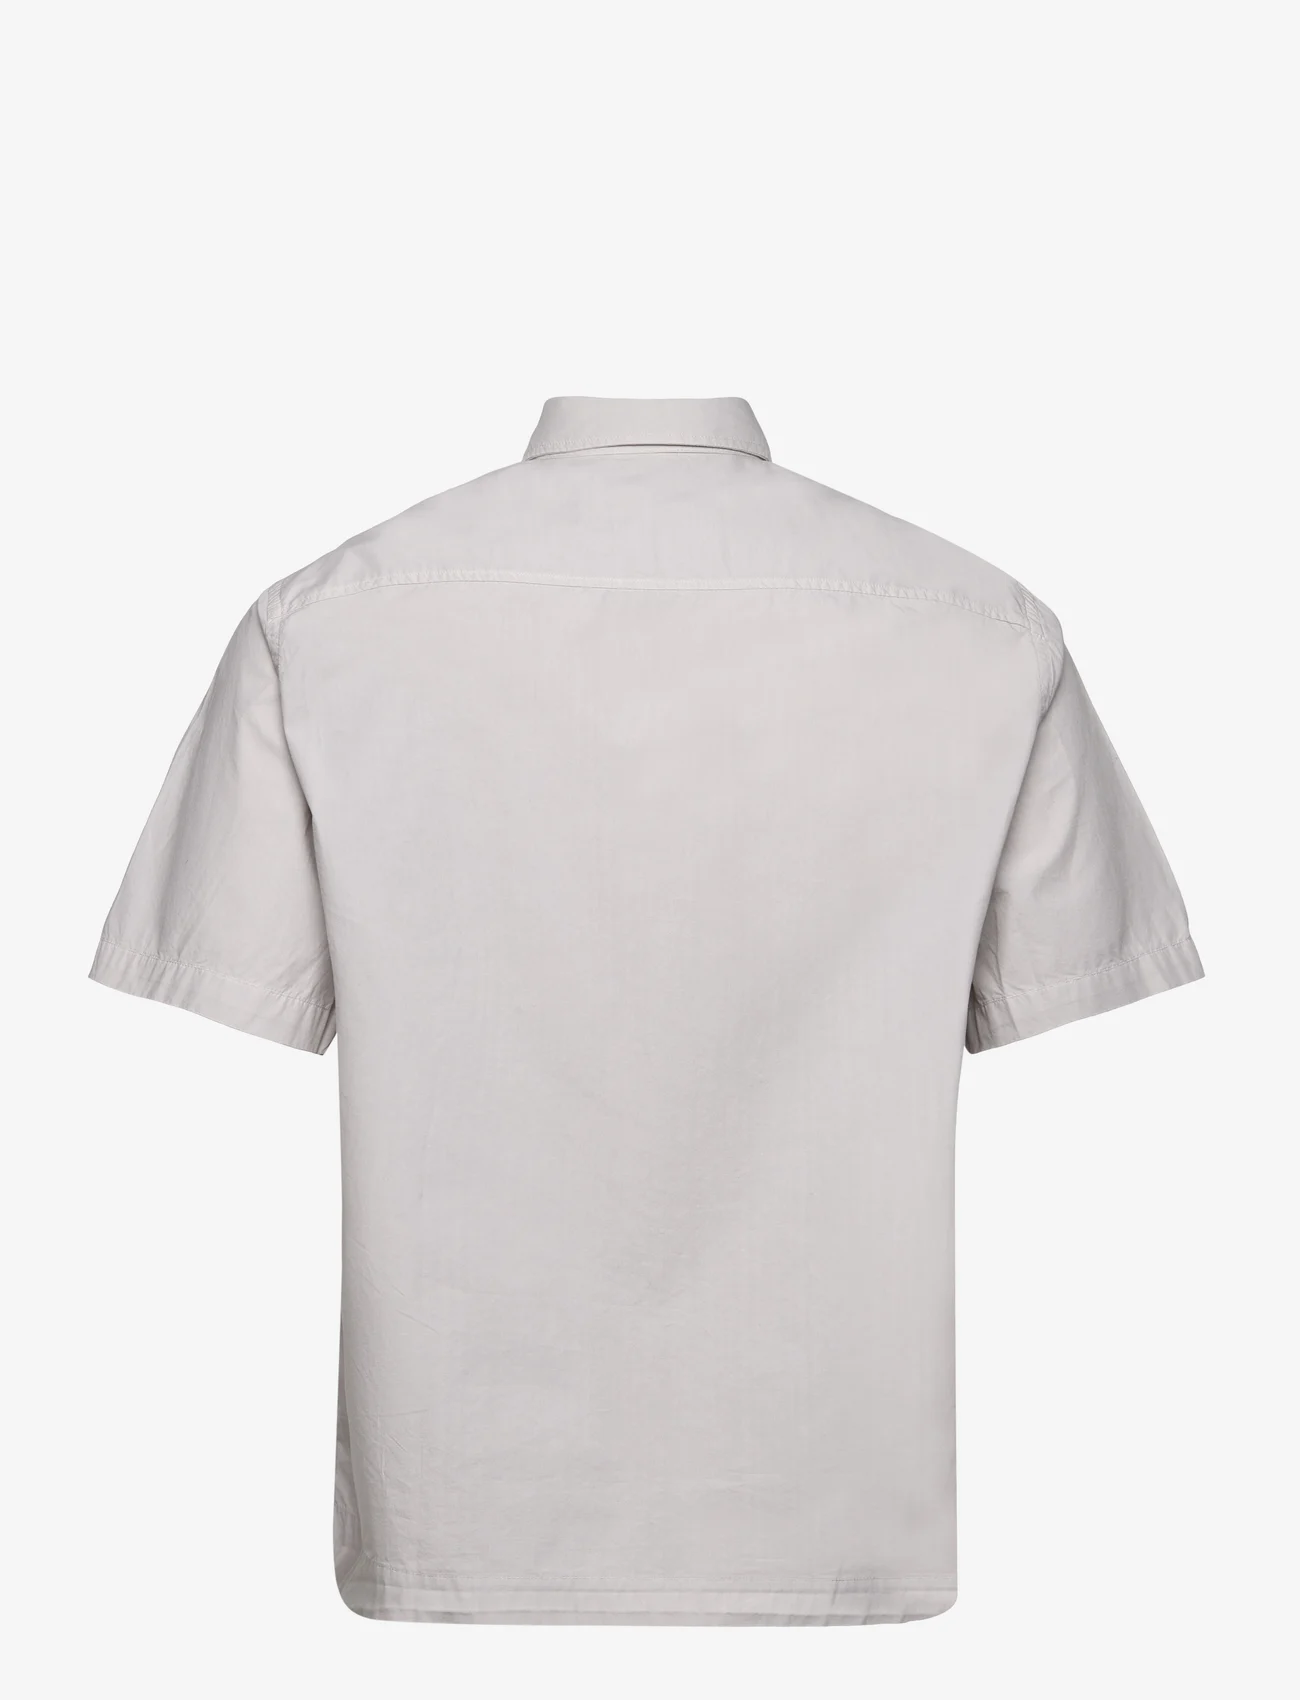 Garment Project - Short Sleeved Shirt - Bone White - lyhythihaiset kauluspaidat - bone white - 1